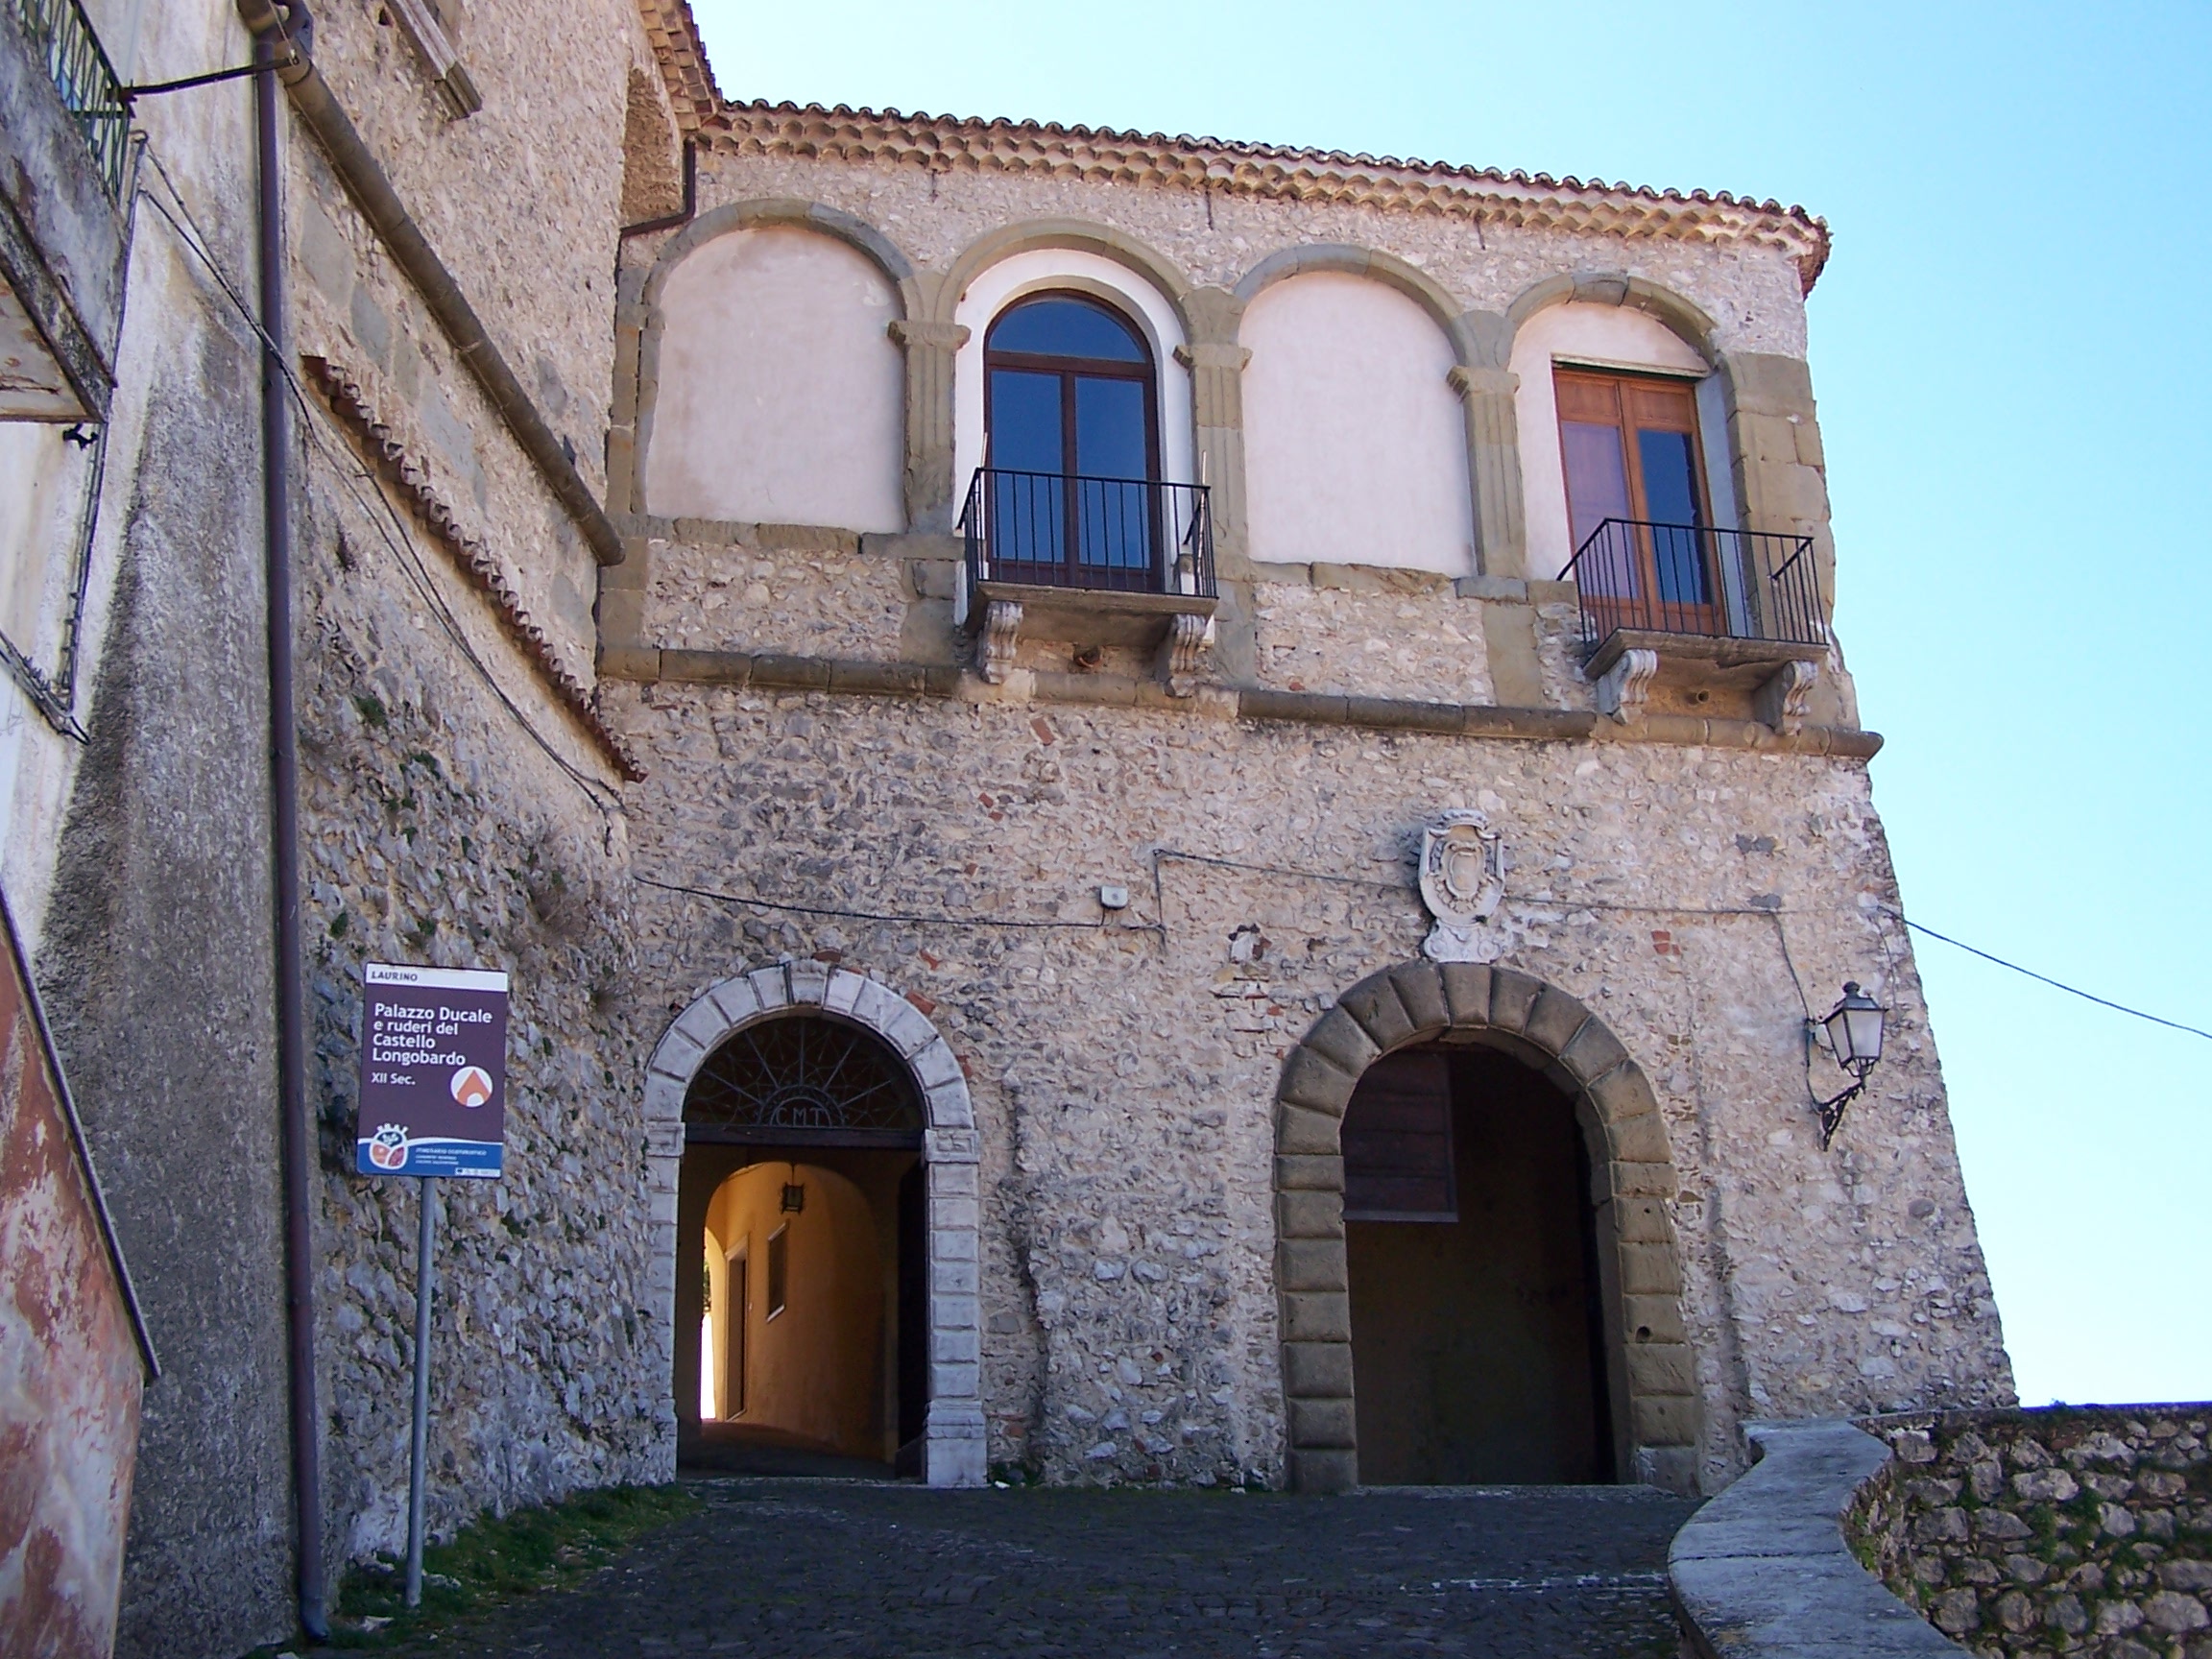 Palazzo ducale - Portali